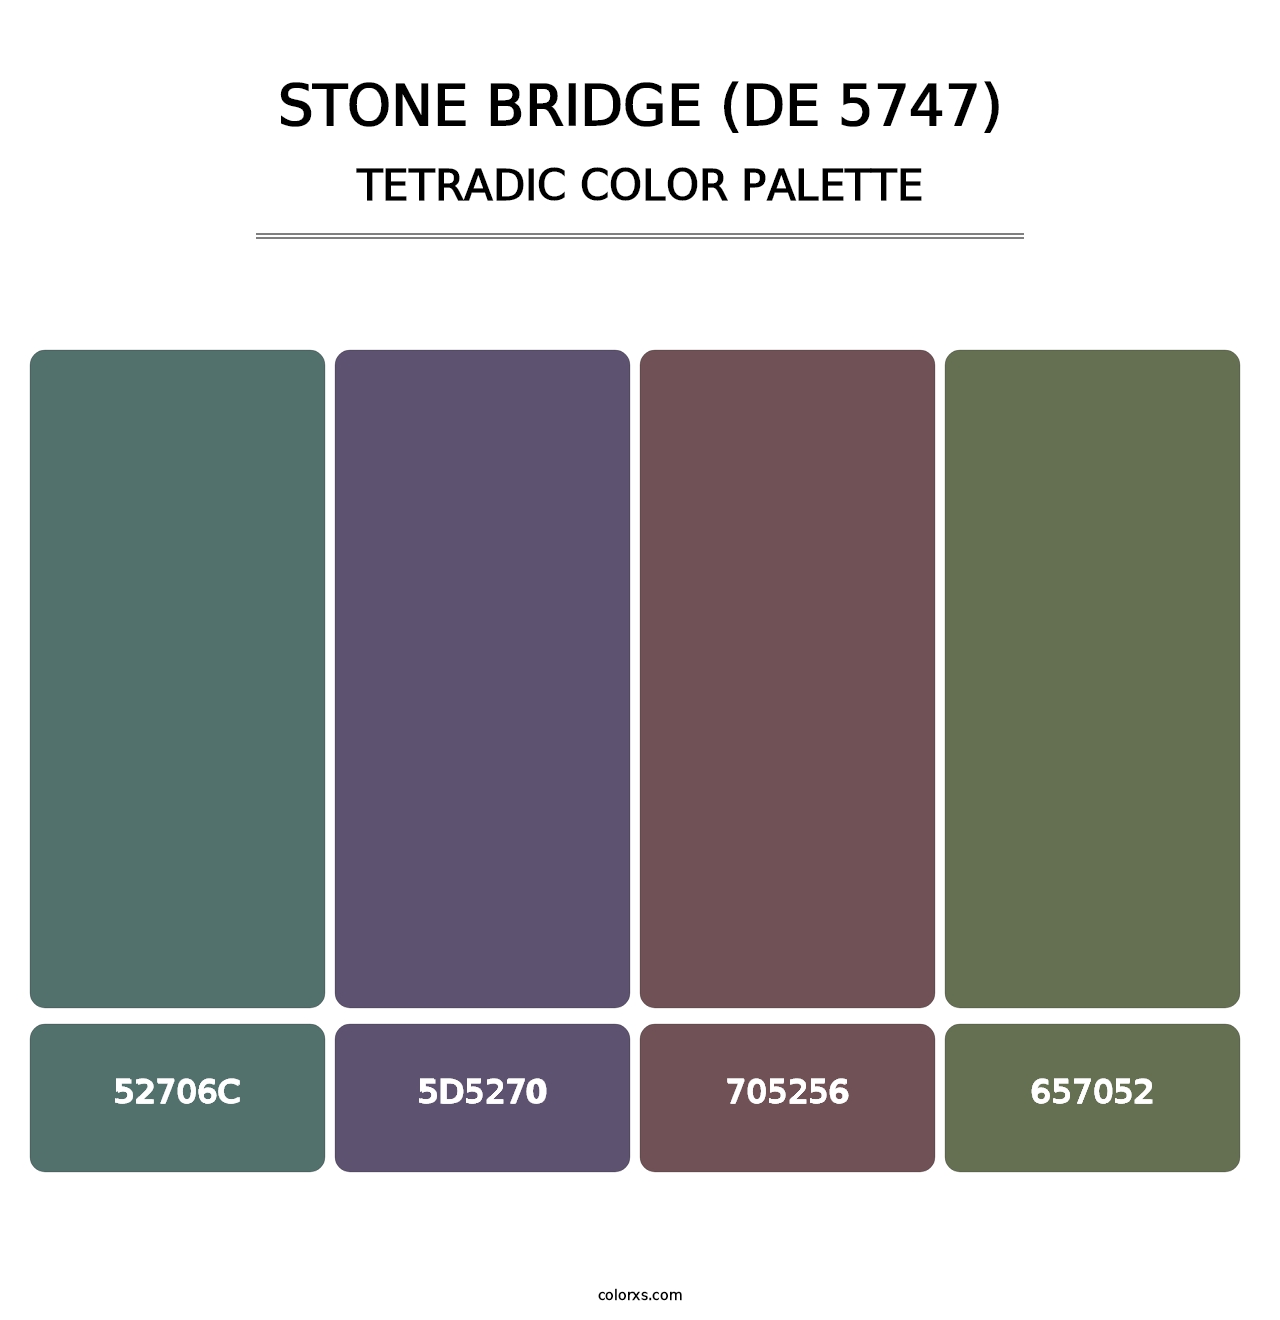 Stone Bridge (DE 5747) - Tetradic Color Palette